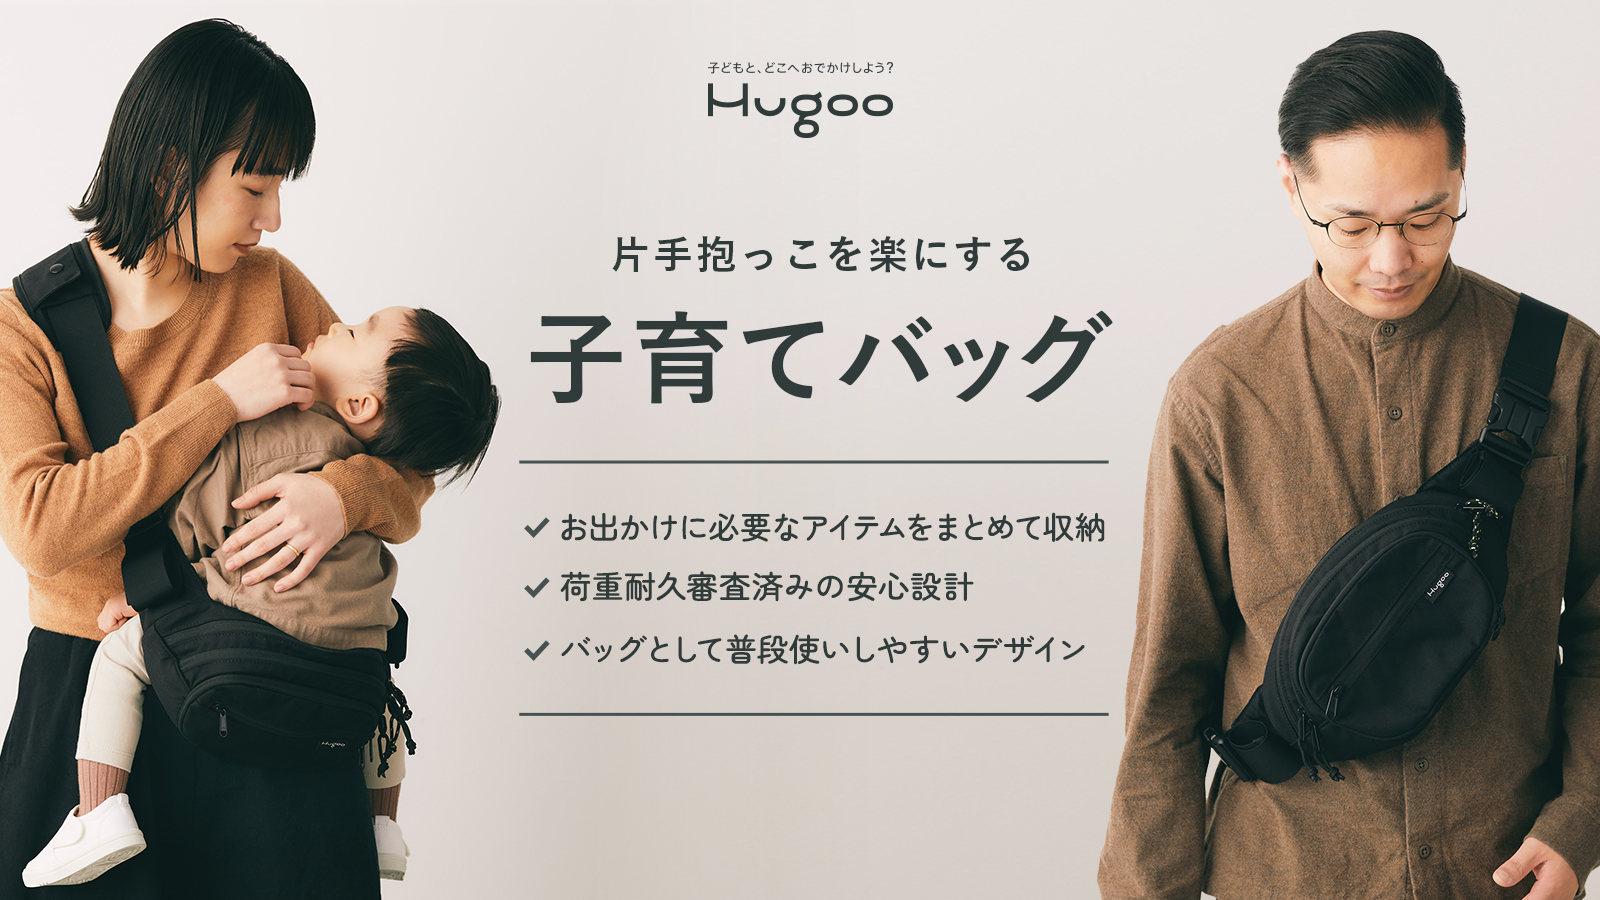 ヒップシート付きショルダーバッグ「Hugoo ハグー」がキッズデザイン